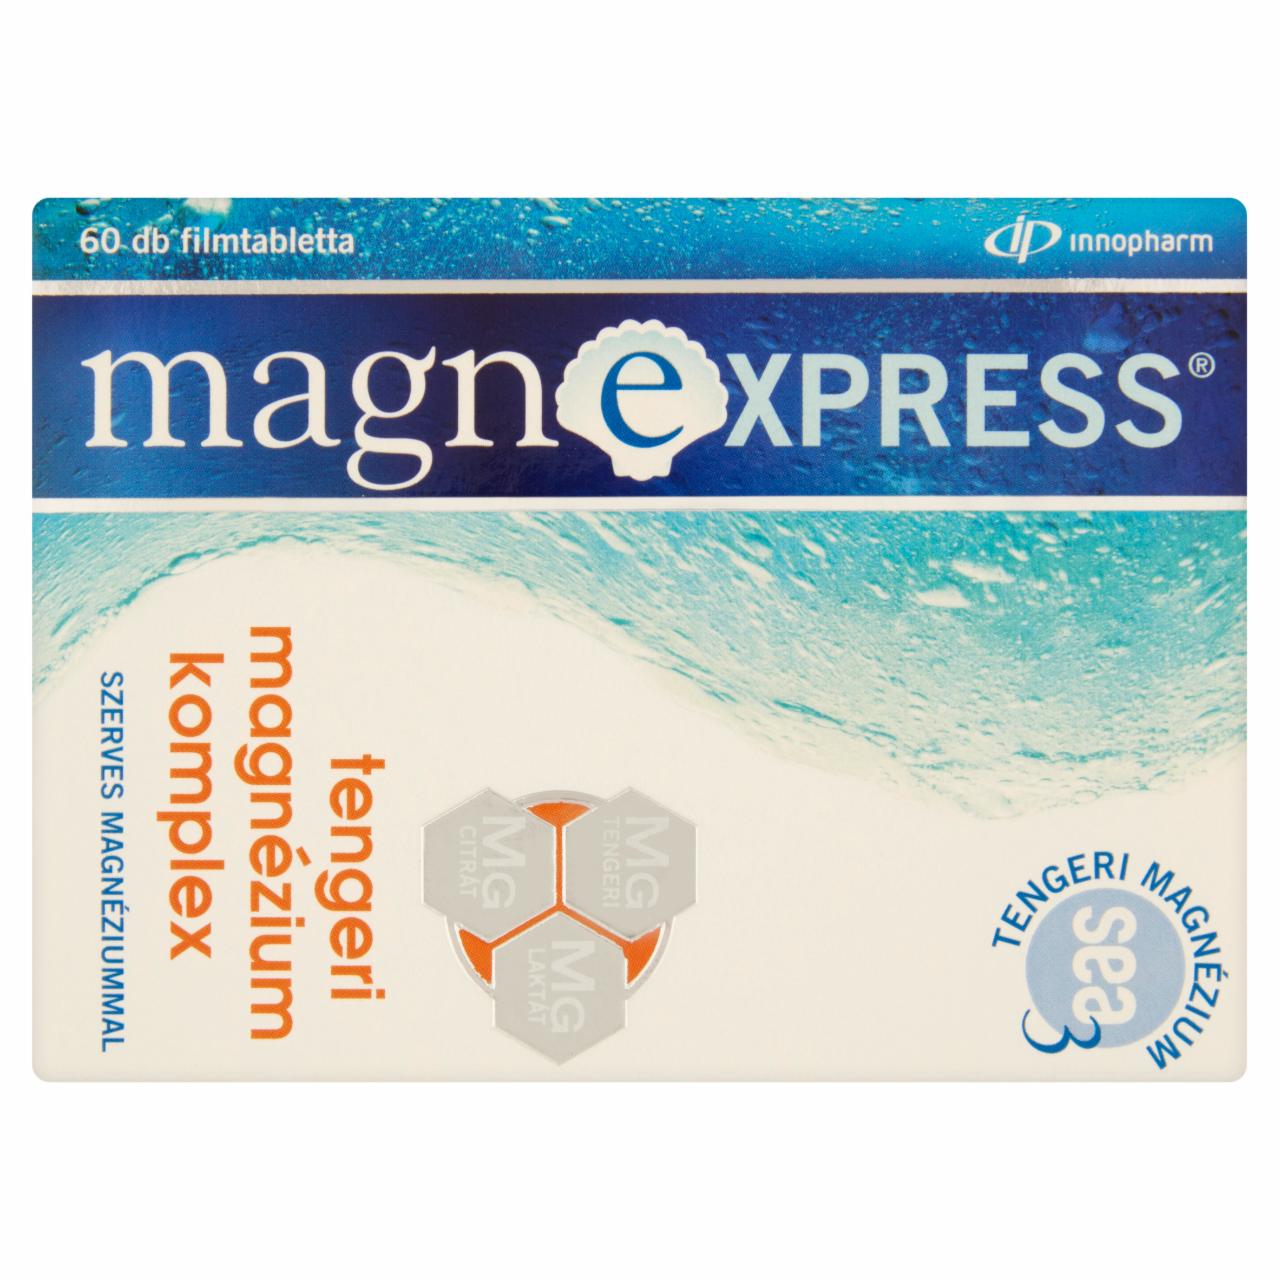 Képek - Innopharm Magnexpress Sea 3 tengeri magnézium komplex étrend-kiegészítő filmtabletta 60 db 72 g